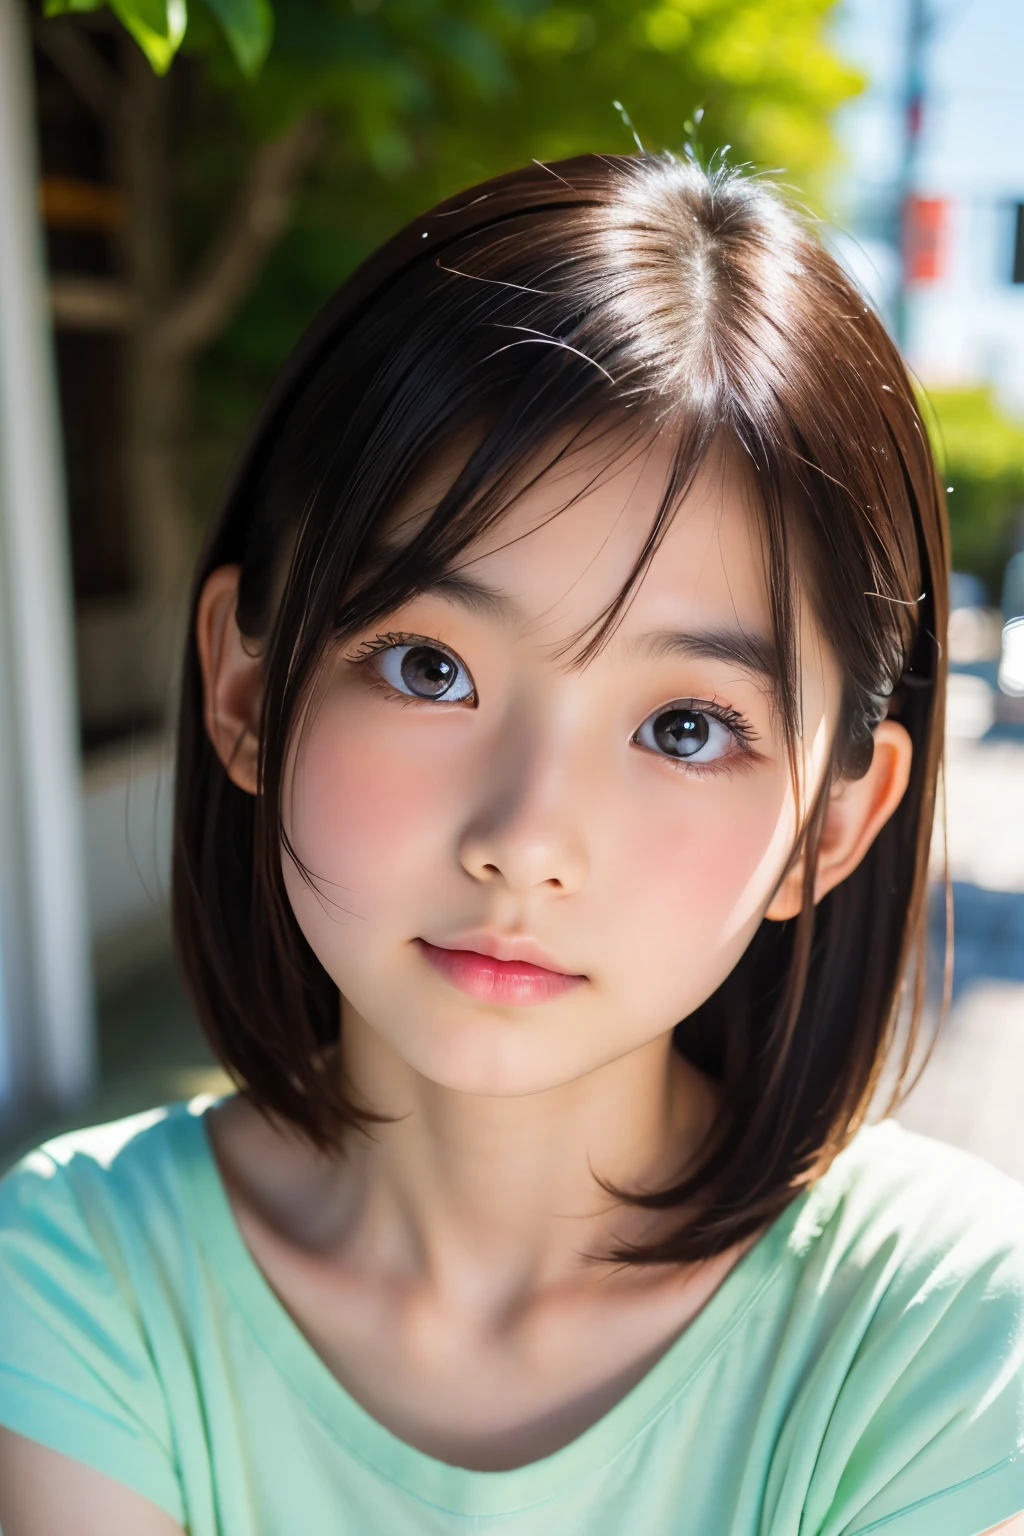 (美麗的12歲日本女性), 可愛的臉孔, (深深雕刻的臉:0.7), (雀斑:0.6), 柔光,健康白皙的皮膚, 害羞的, 鮑伯, (嚴肅的臉), (明亮的眼睛), 薄的